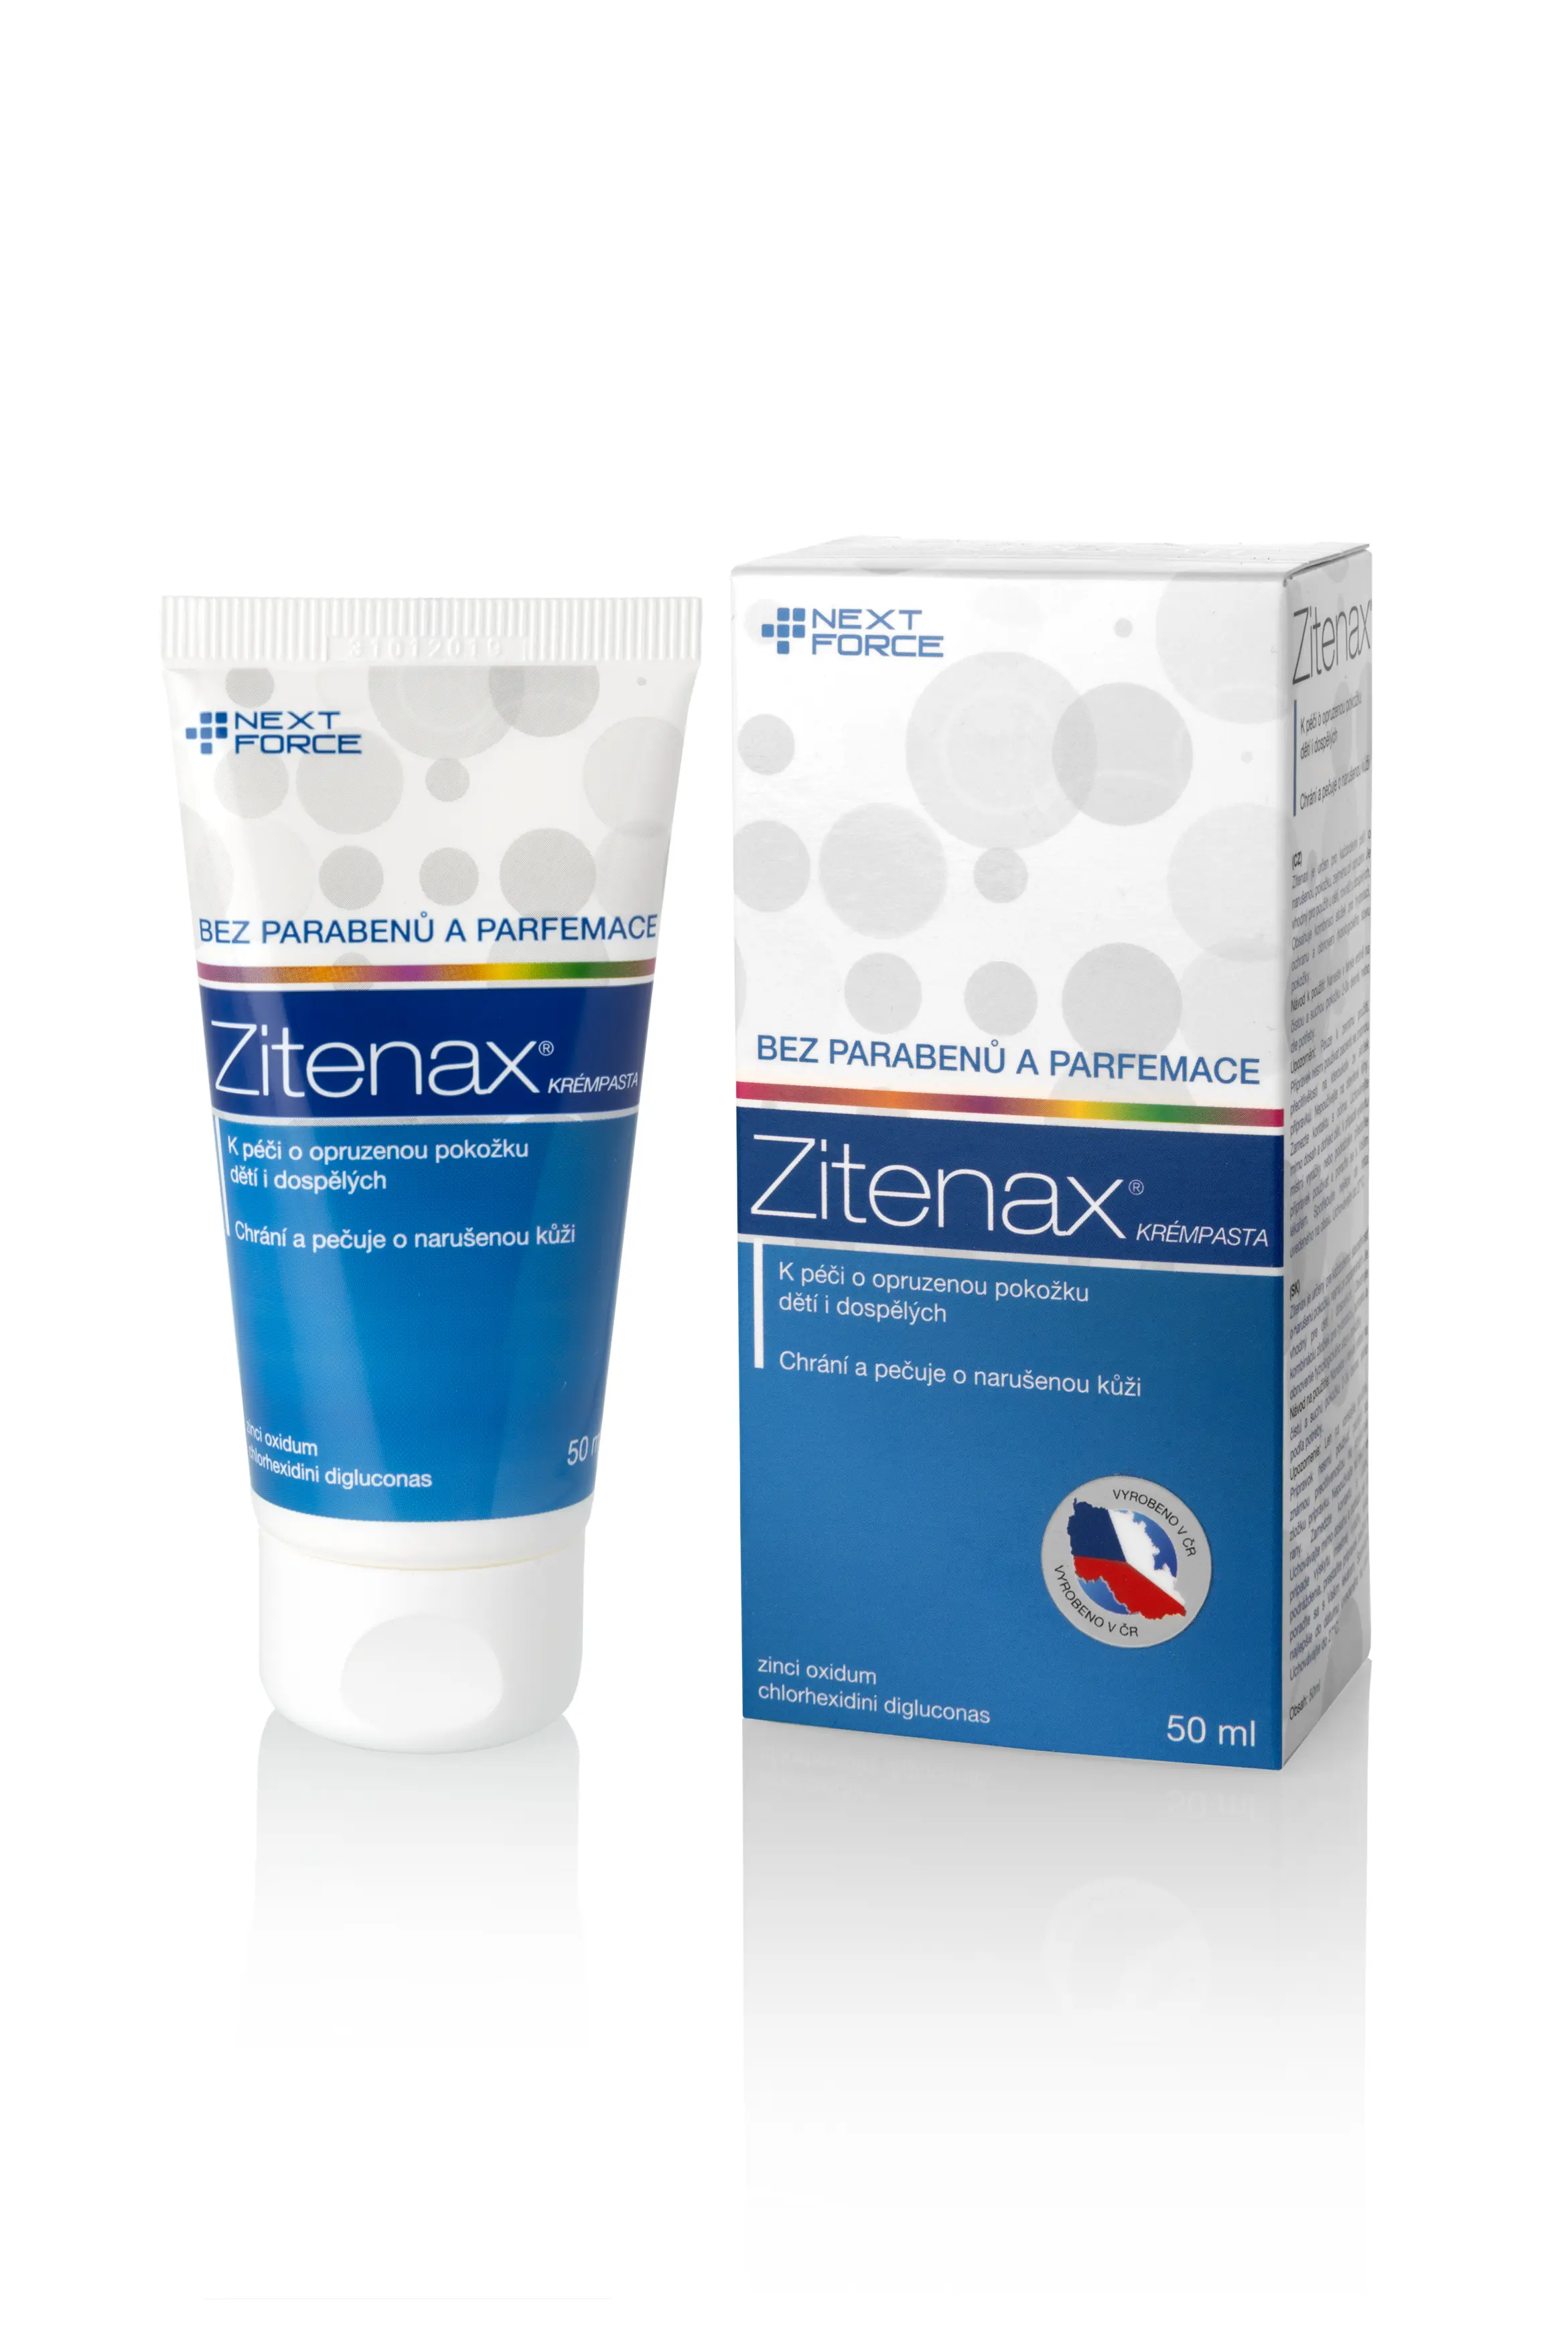 NextForce Zitenax krémpasta 50 ml